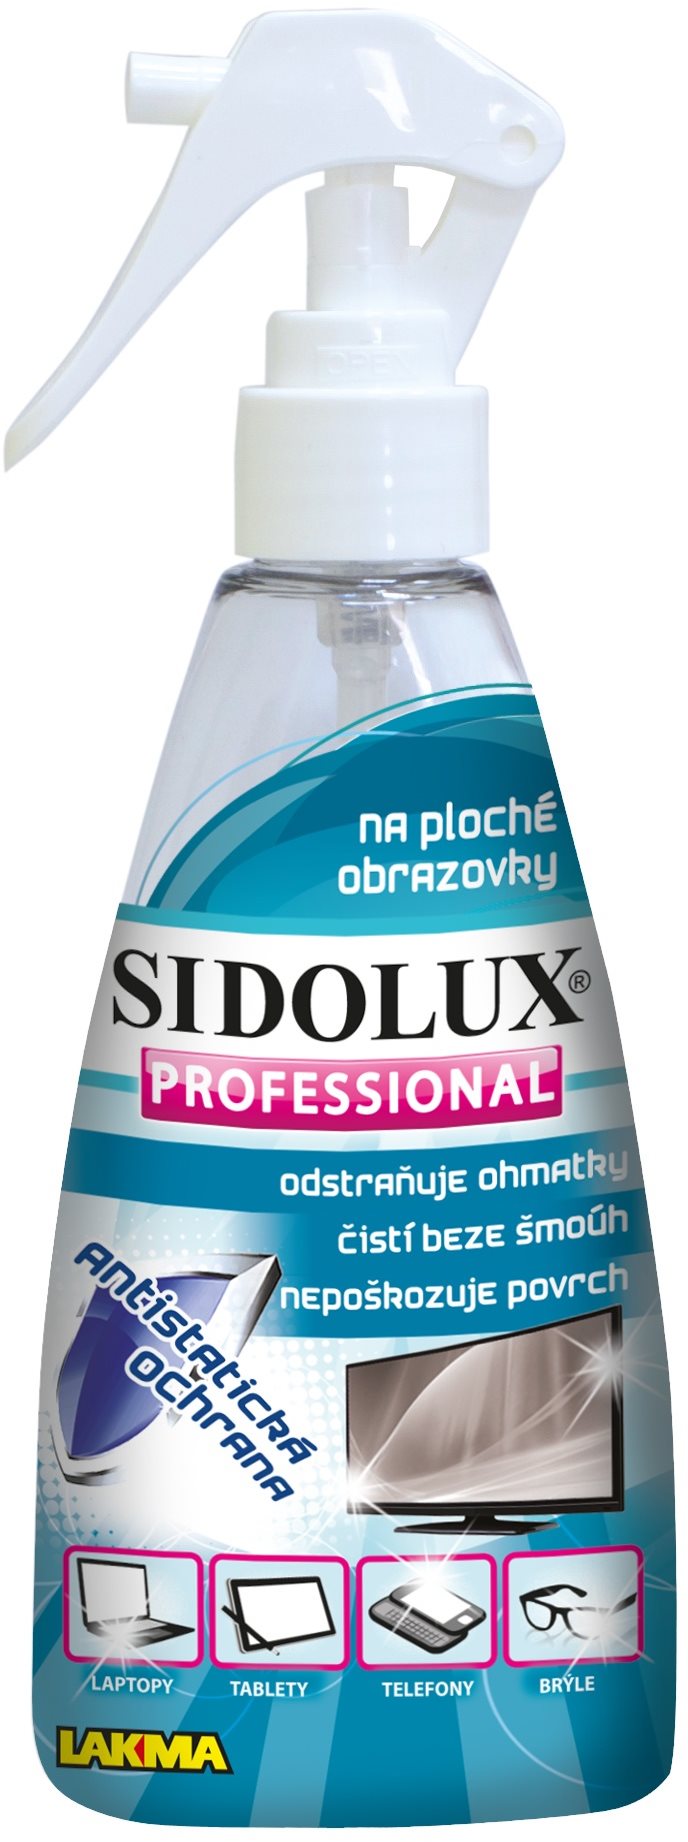 SIDOLUX Professional képernyő tisztító, 200 ml